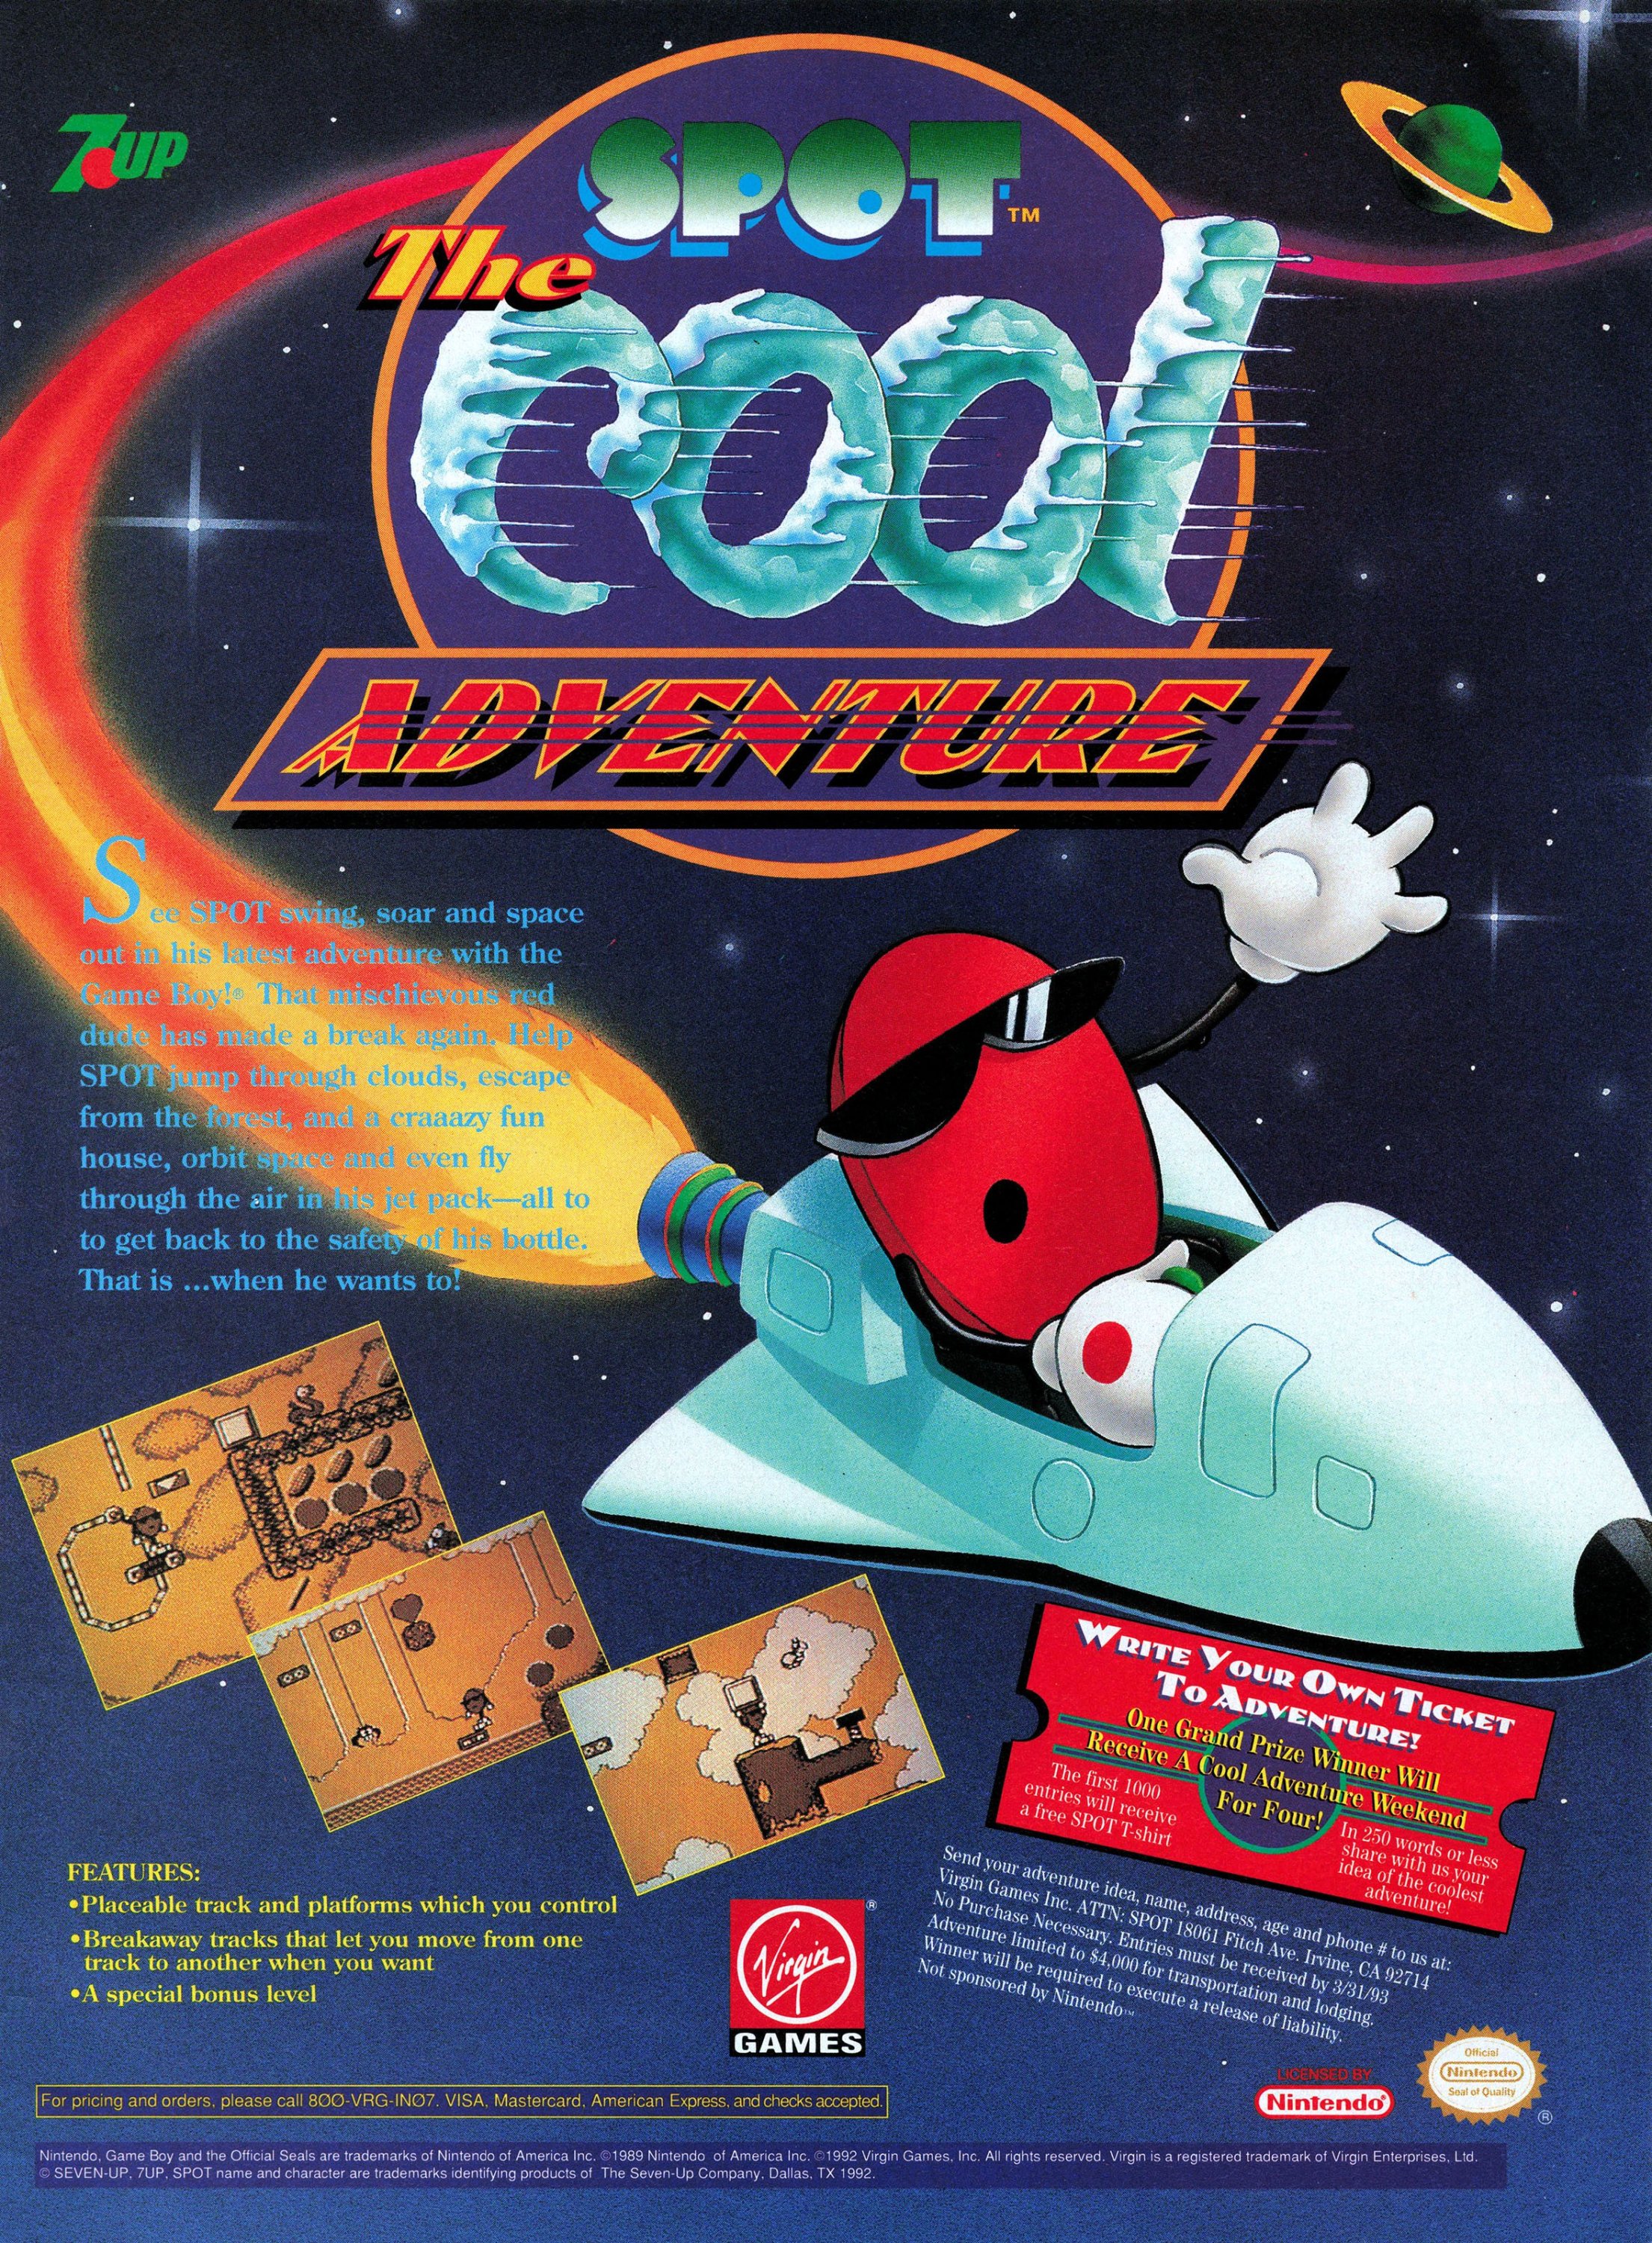 Spot: The Cool Adventure (December 1992)